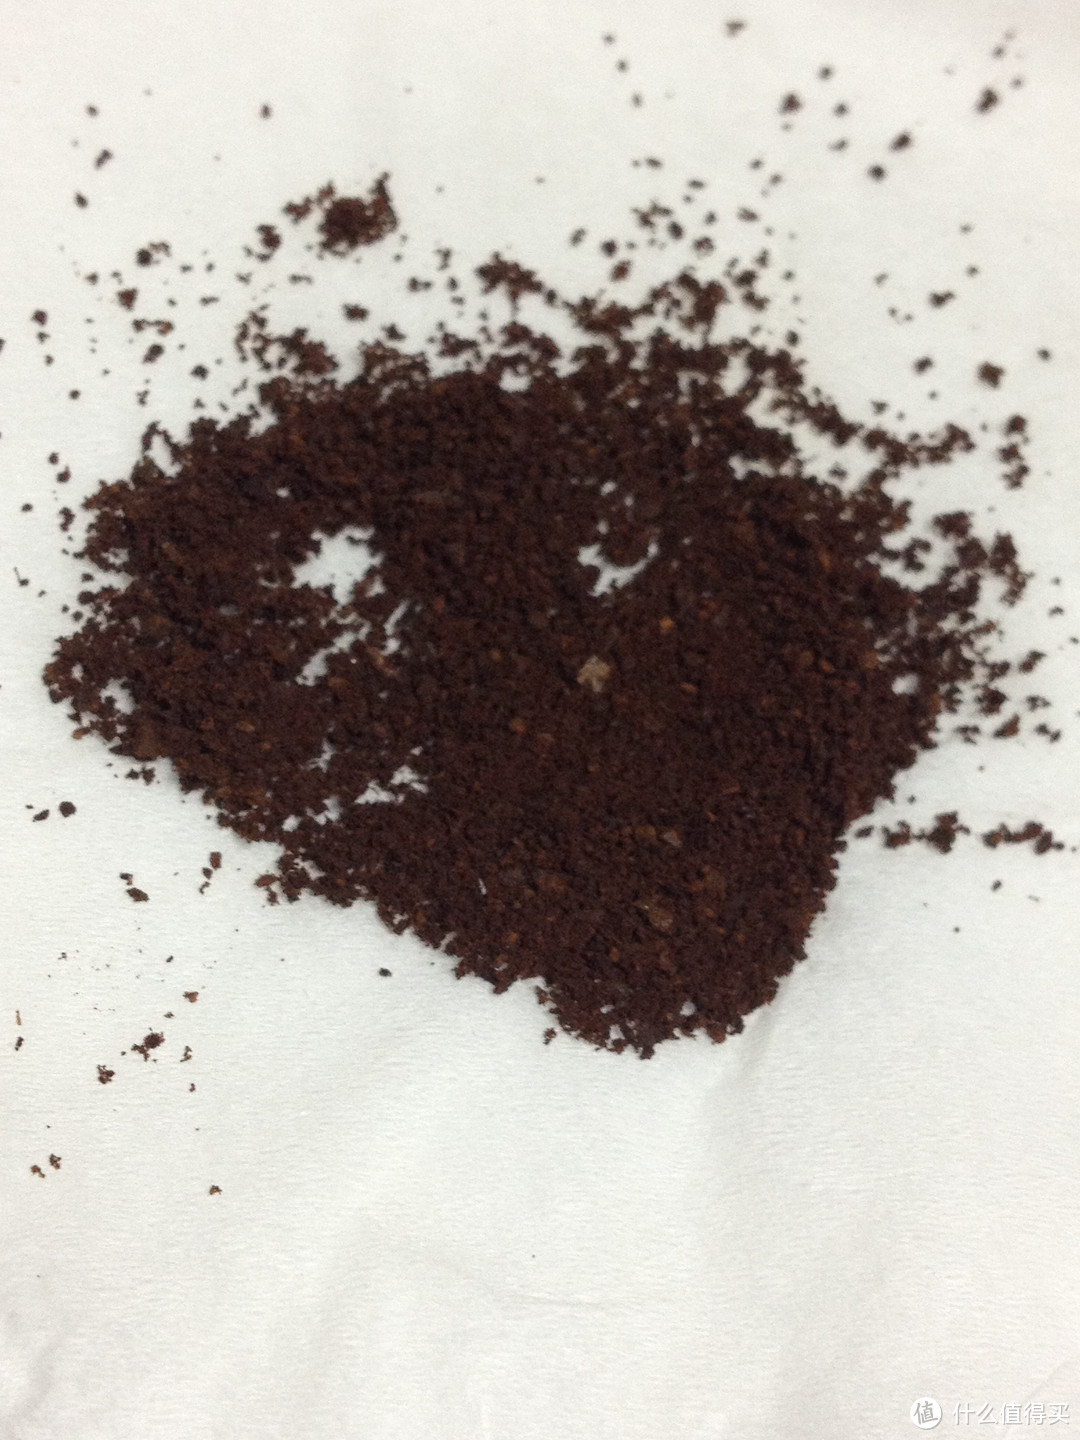 滤泡咖啡装备：HARIO 陶瓷磨芯手摇咖啡磨豆机 MSS-1B、不锈钢过滤网一人份咖啡壶 CFO-1B